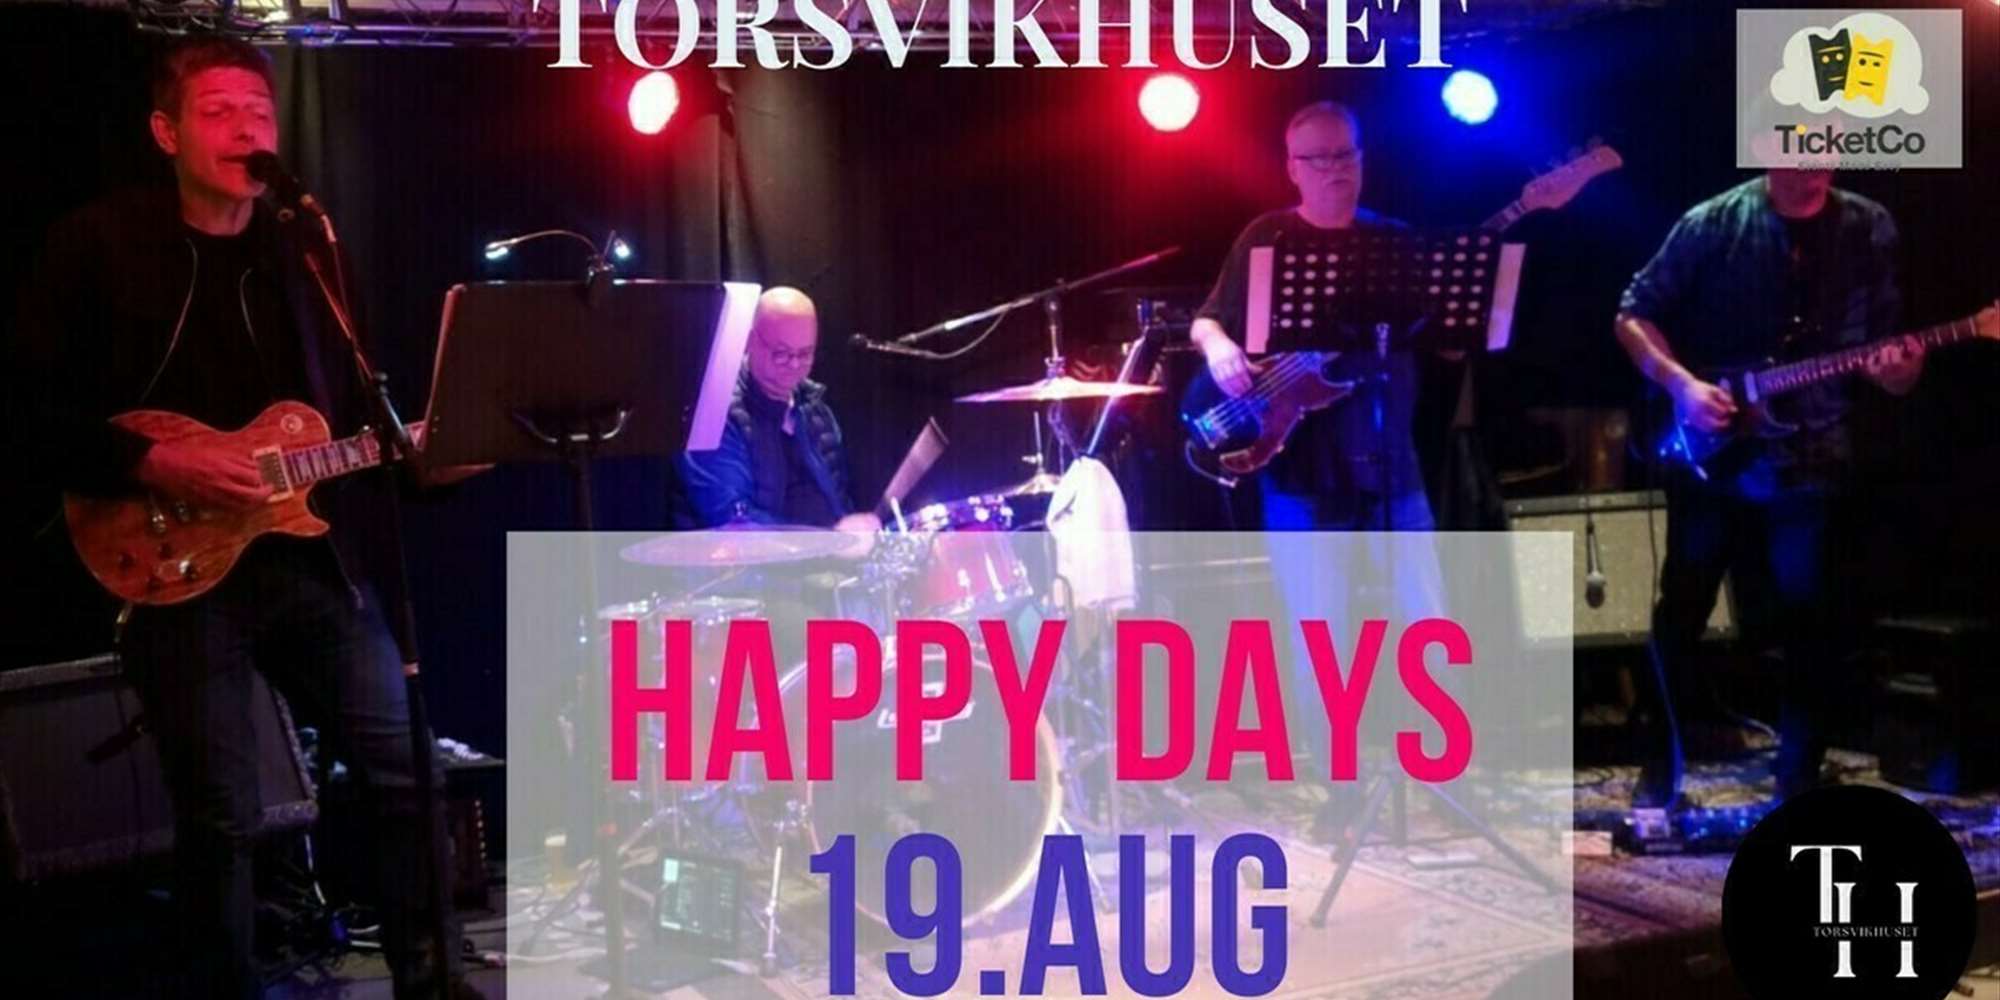 Happy Days Band / Torsvikhuset